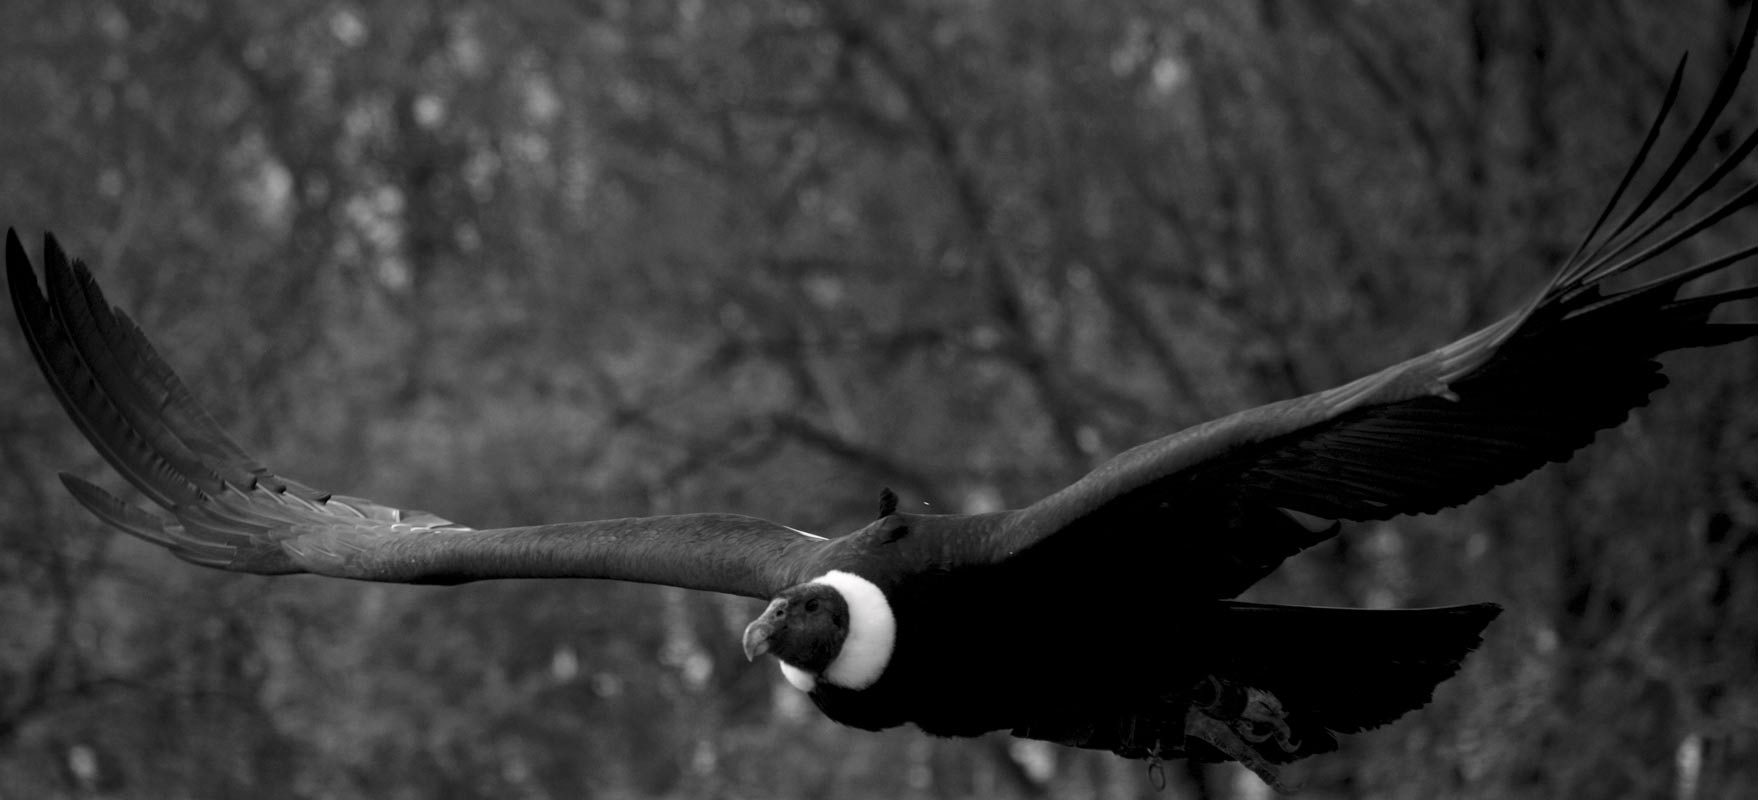 Ornithological park France Midi-Pyrenees : Venez voir le Condor des Andes, le plus grand rapace au monde pendant un spectacle d'oiseaux au Rocher des Aigles.